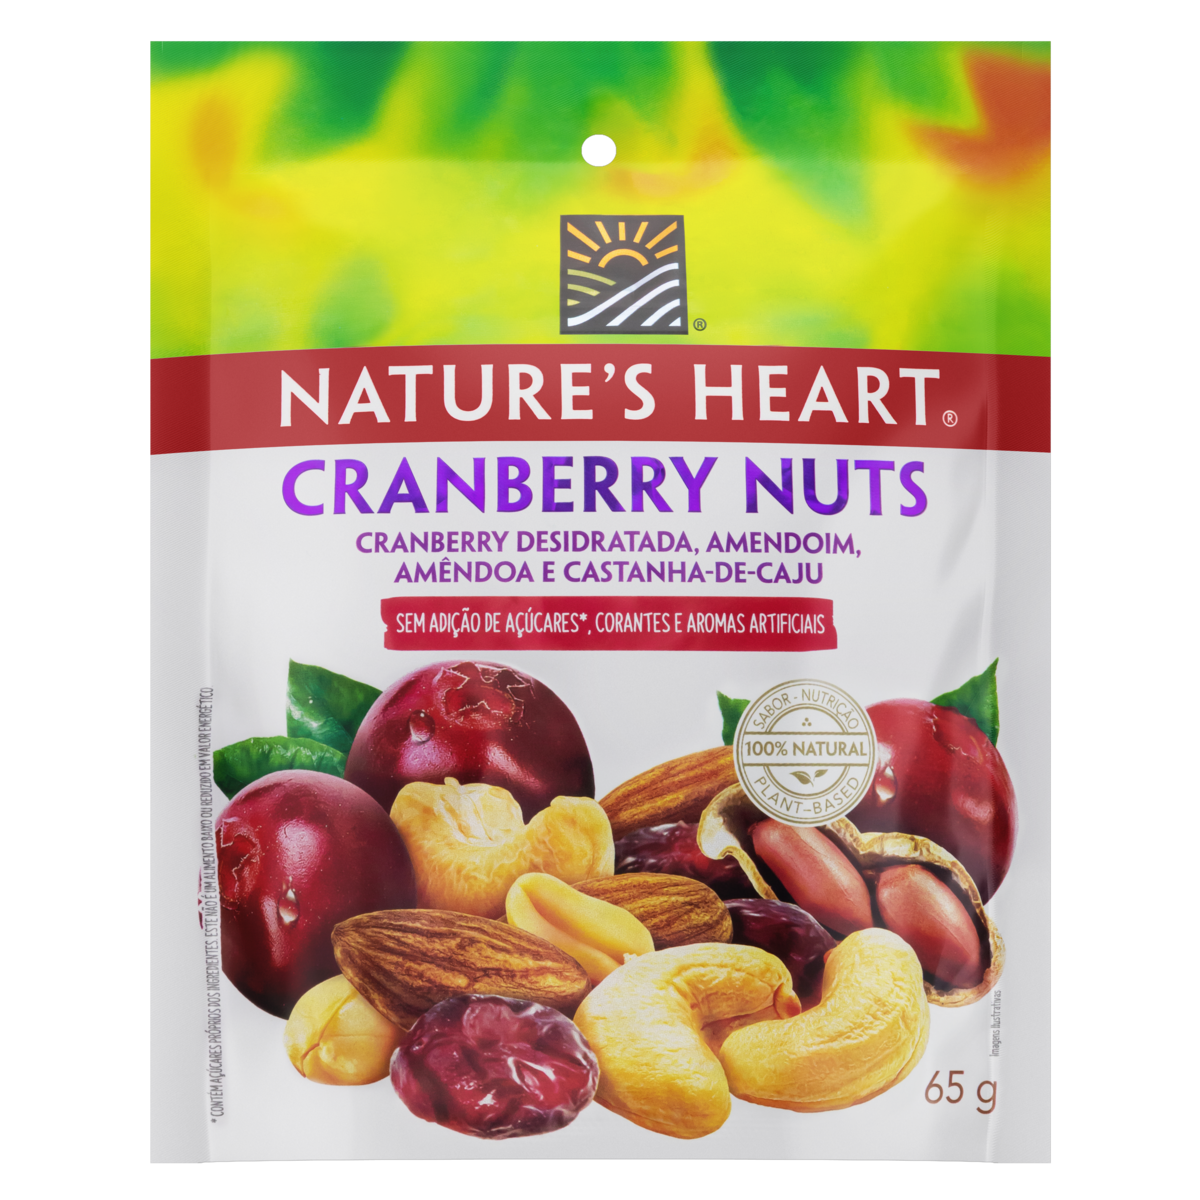 7891000289044 - MIX DE FRUTAS E SEMENTES CRANBERRY NUTS NATURES HEART POUCH 65G